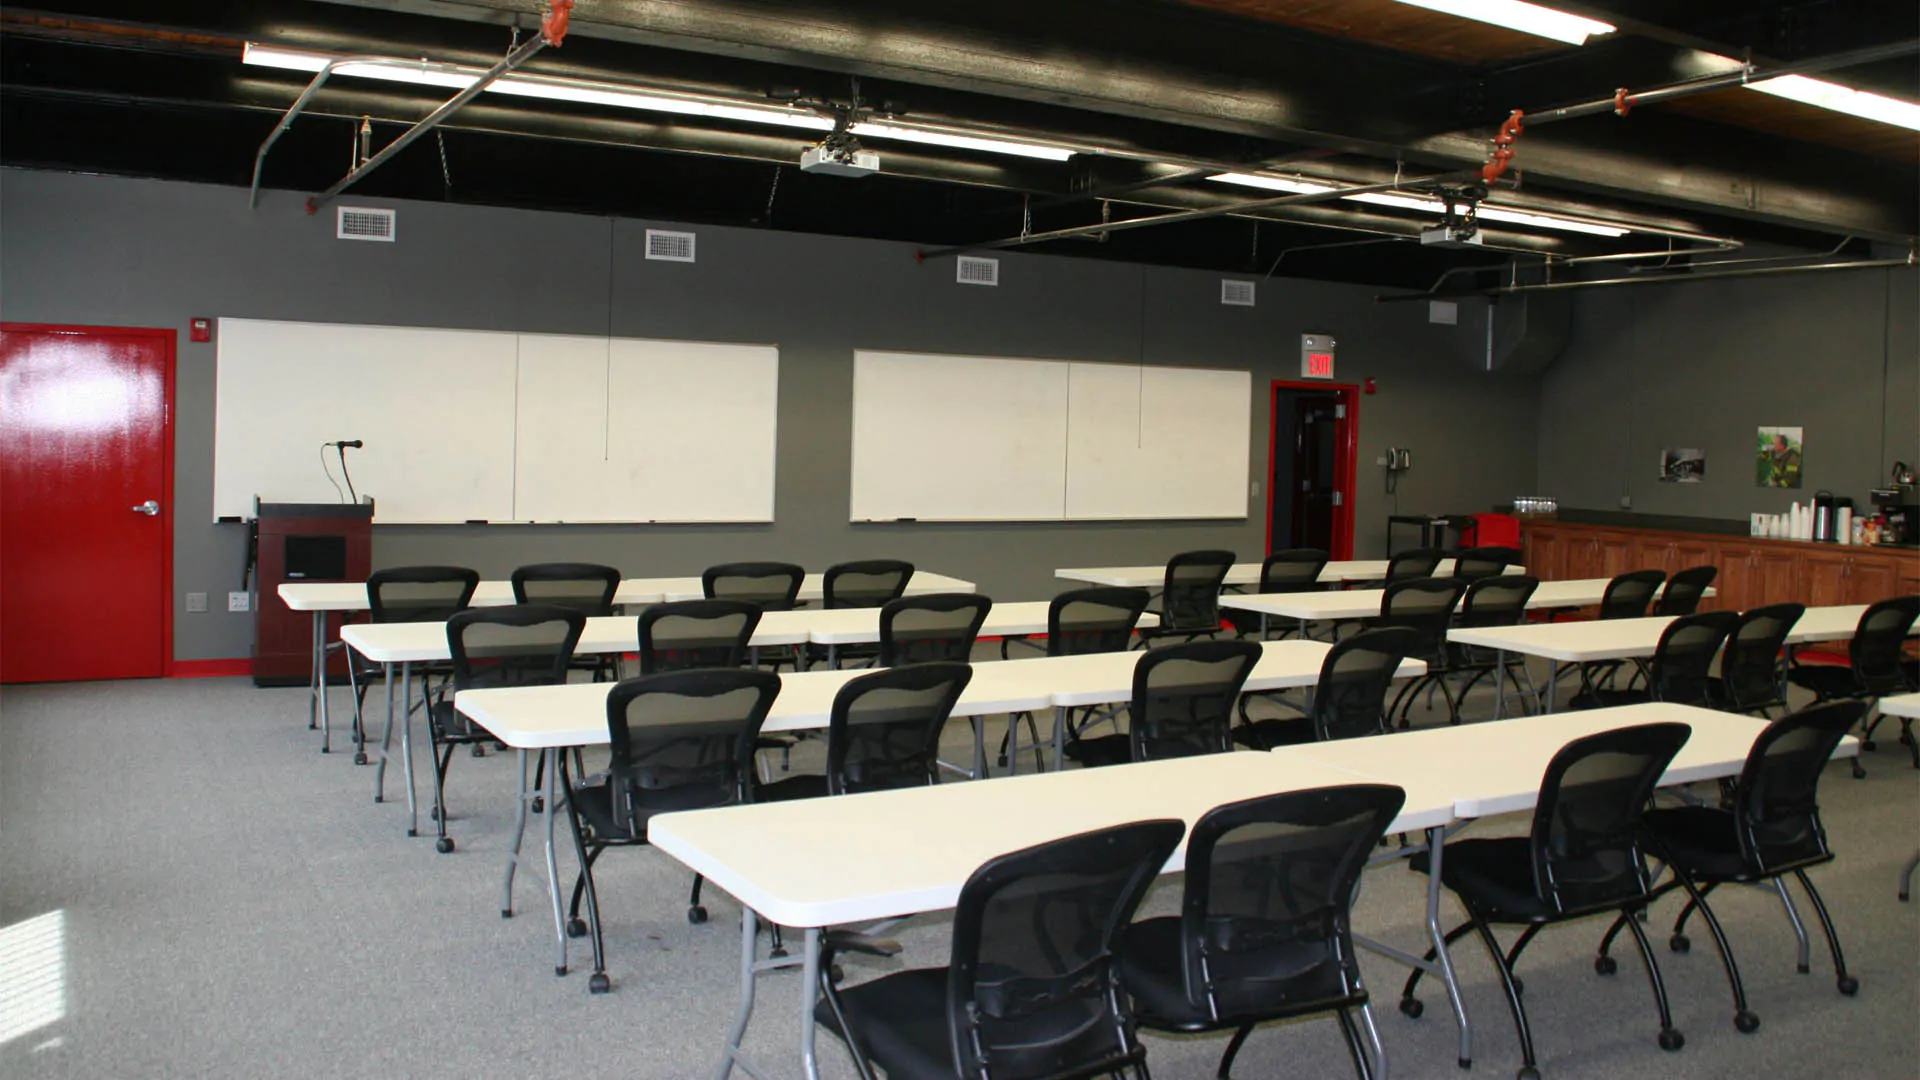 Training Center Interior Design (13)